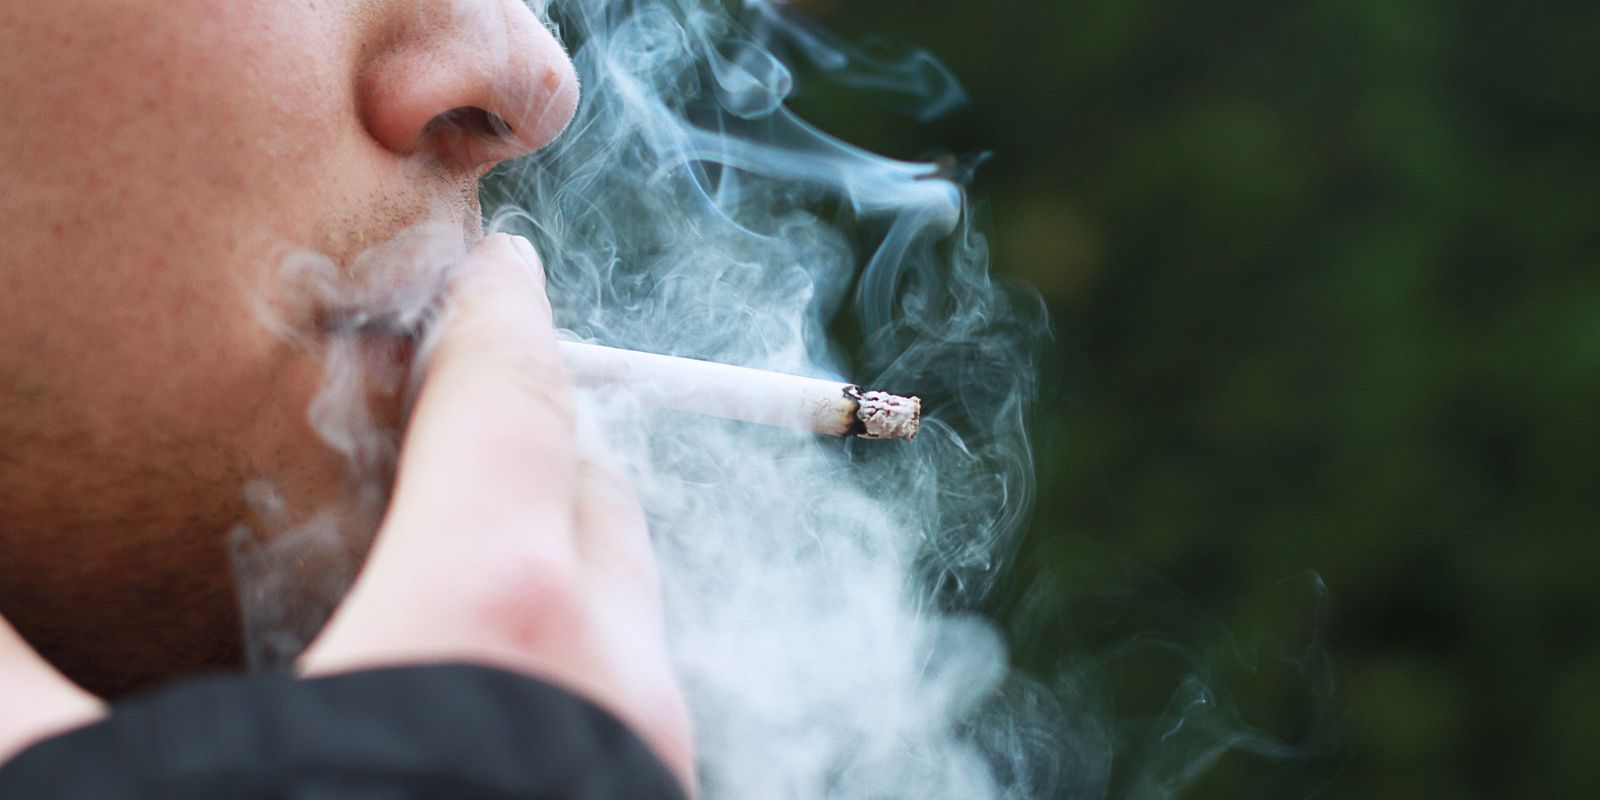 El tabaquismo causa 80% de las muertes por cáncer de pulmón en Brasil